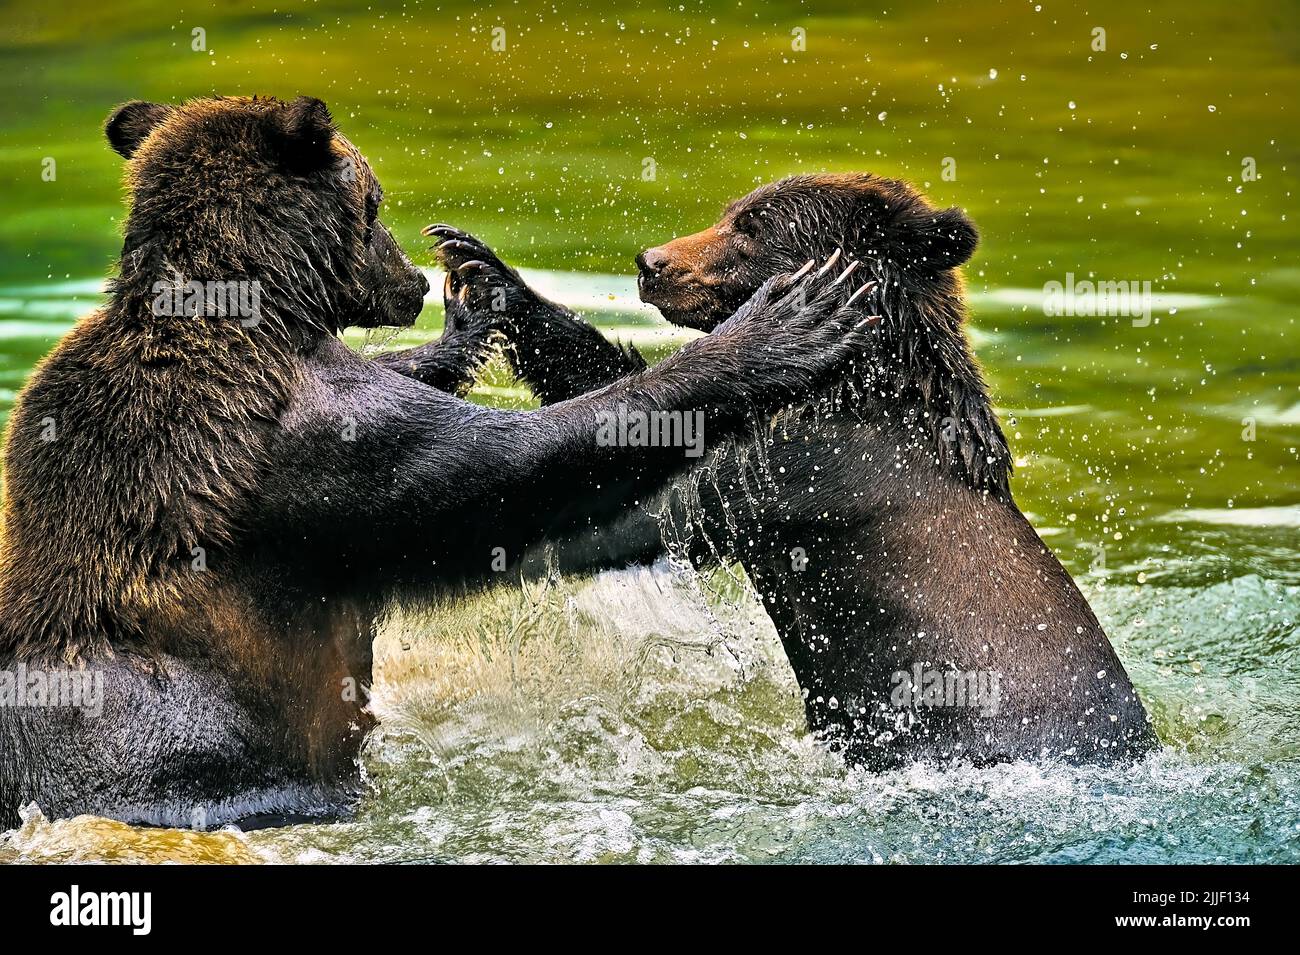 Madre y cachorro de osos grizzly jugando agresivamente en una tranquila laguna en el Bosque Nacional Tongass en Alaska, EE.UU Foto de stock